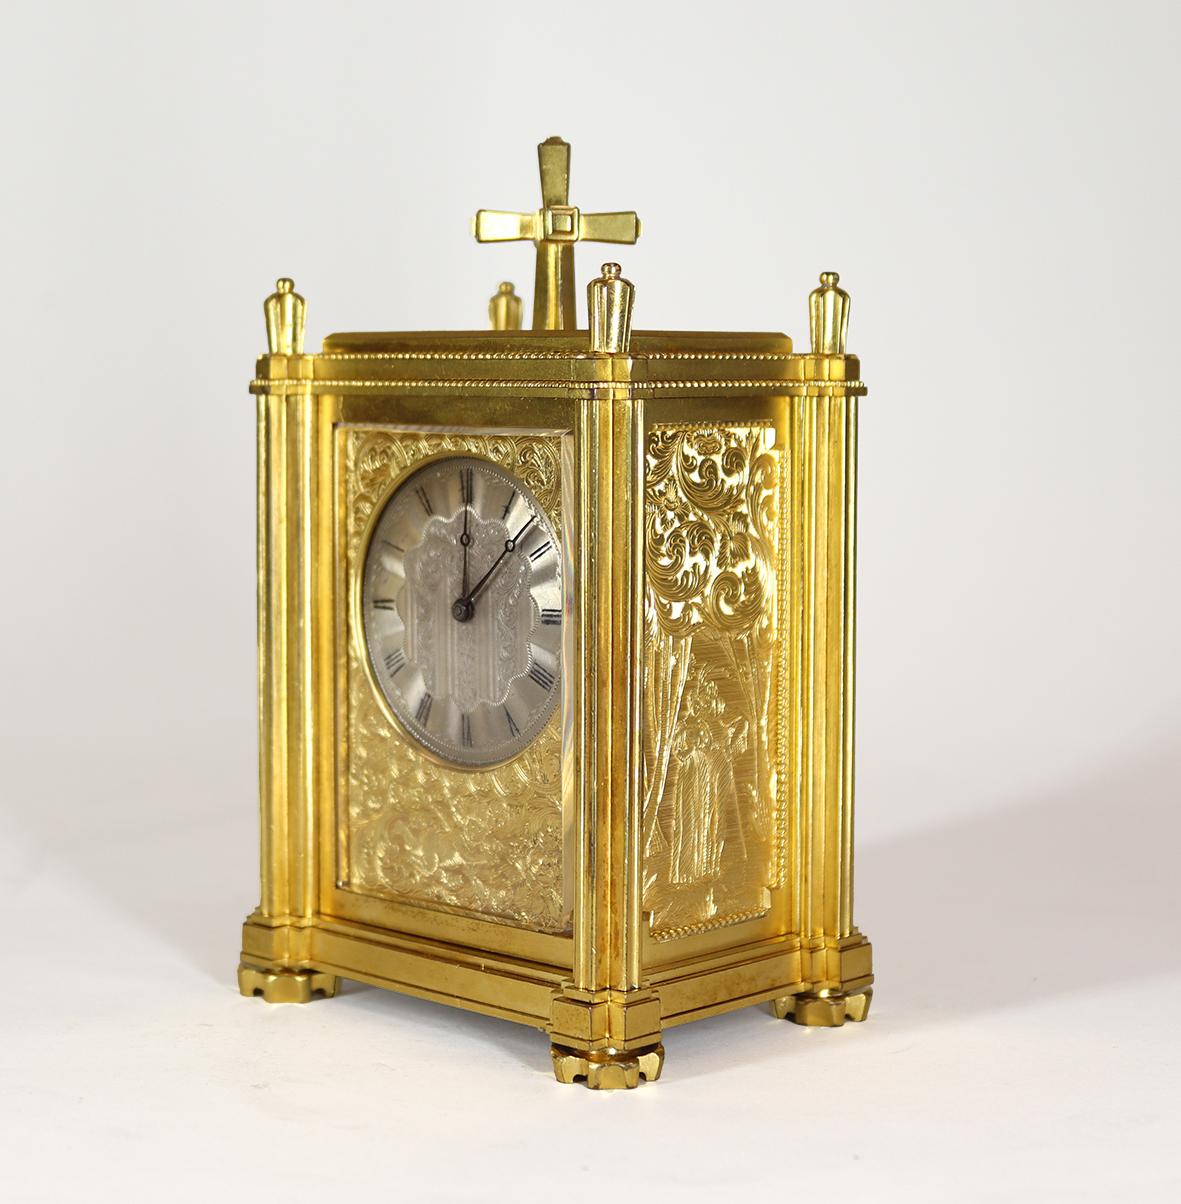 Eine außergewöhnliche Englisch fusee Wagen Uhr timepeice von zwei der größten Uhrmacher des neunzehnten Jahrhunderts. Das achttägige, einkettige Schnecke-Uhrwerk mit Aufrechterhaltung der Kraft und mit Steinen besetzter, unterbrochener englischer